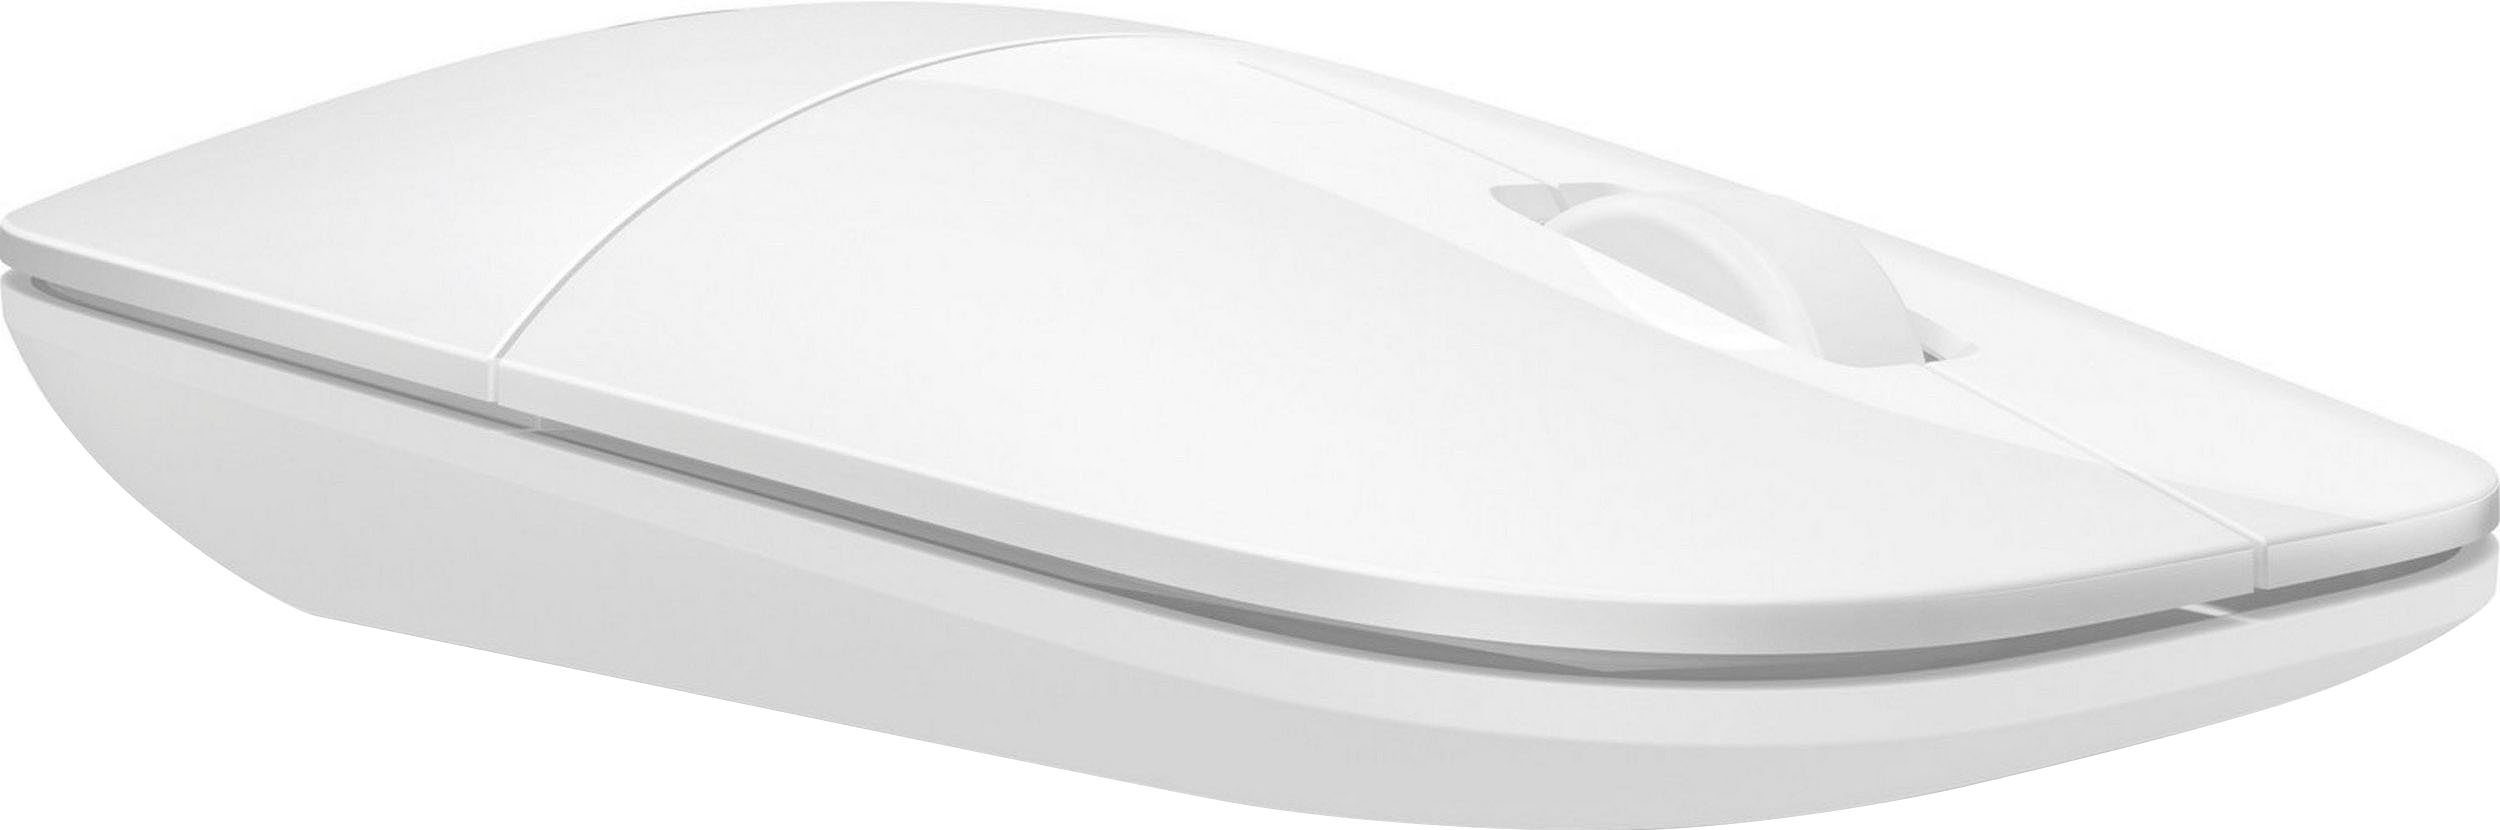 HP Z3700 weiß Maus